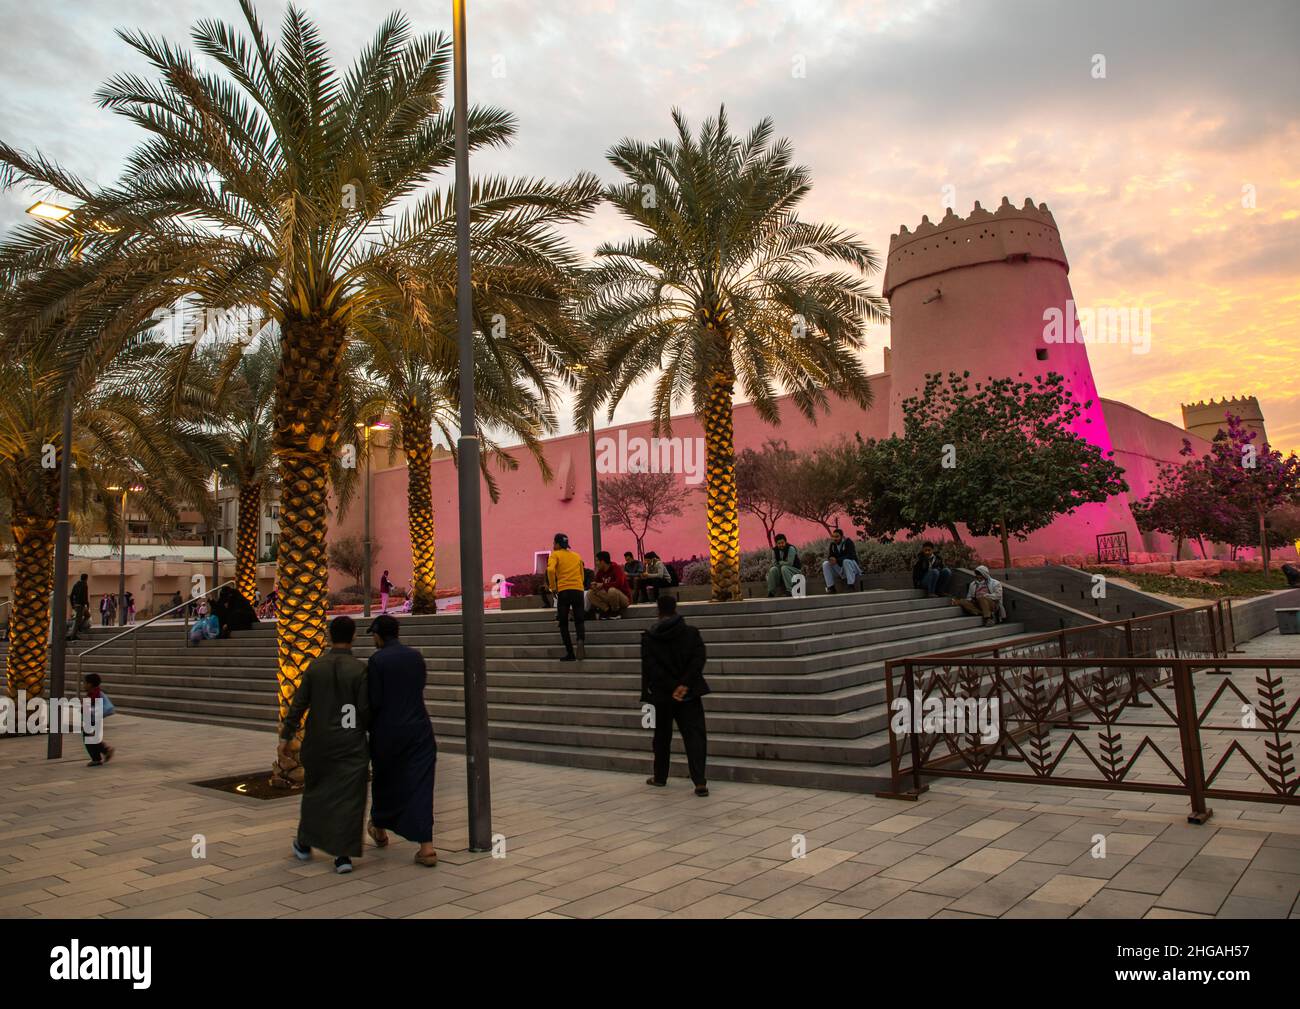 Musmak fort at dusk, Riyadh Province, Riyadh, Saudi Arabia Stock Photo